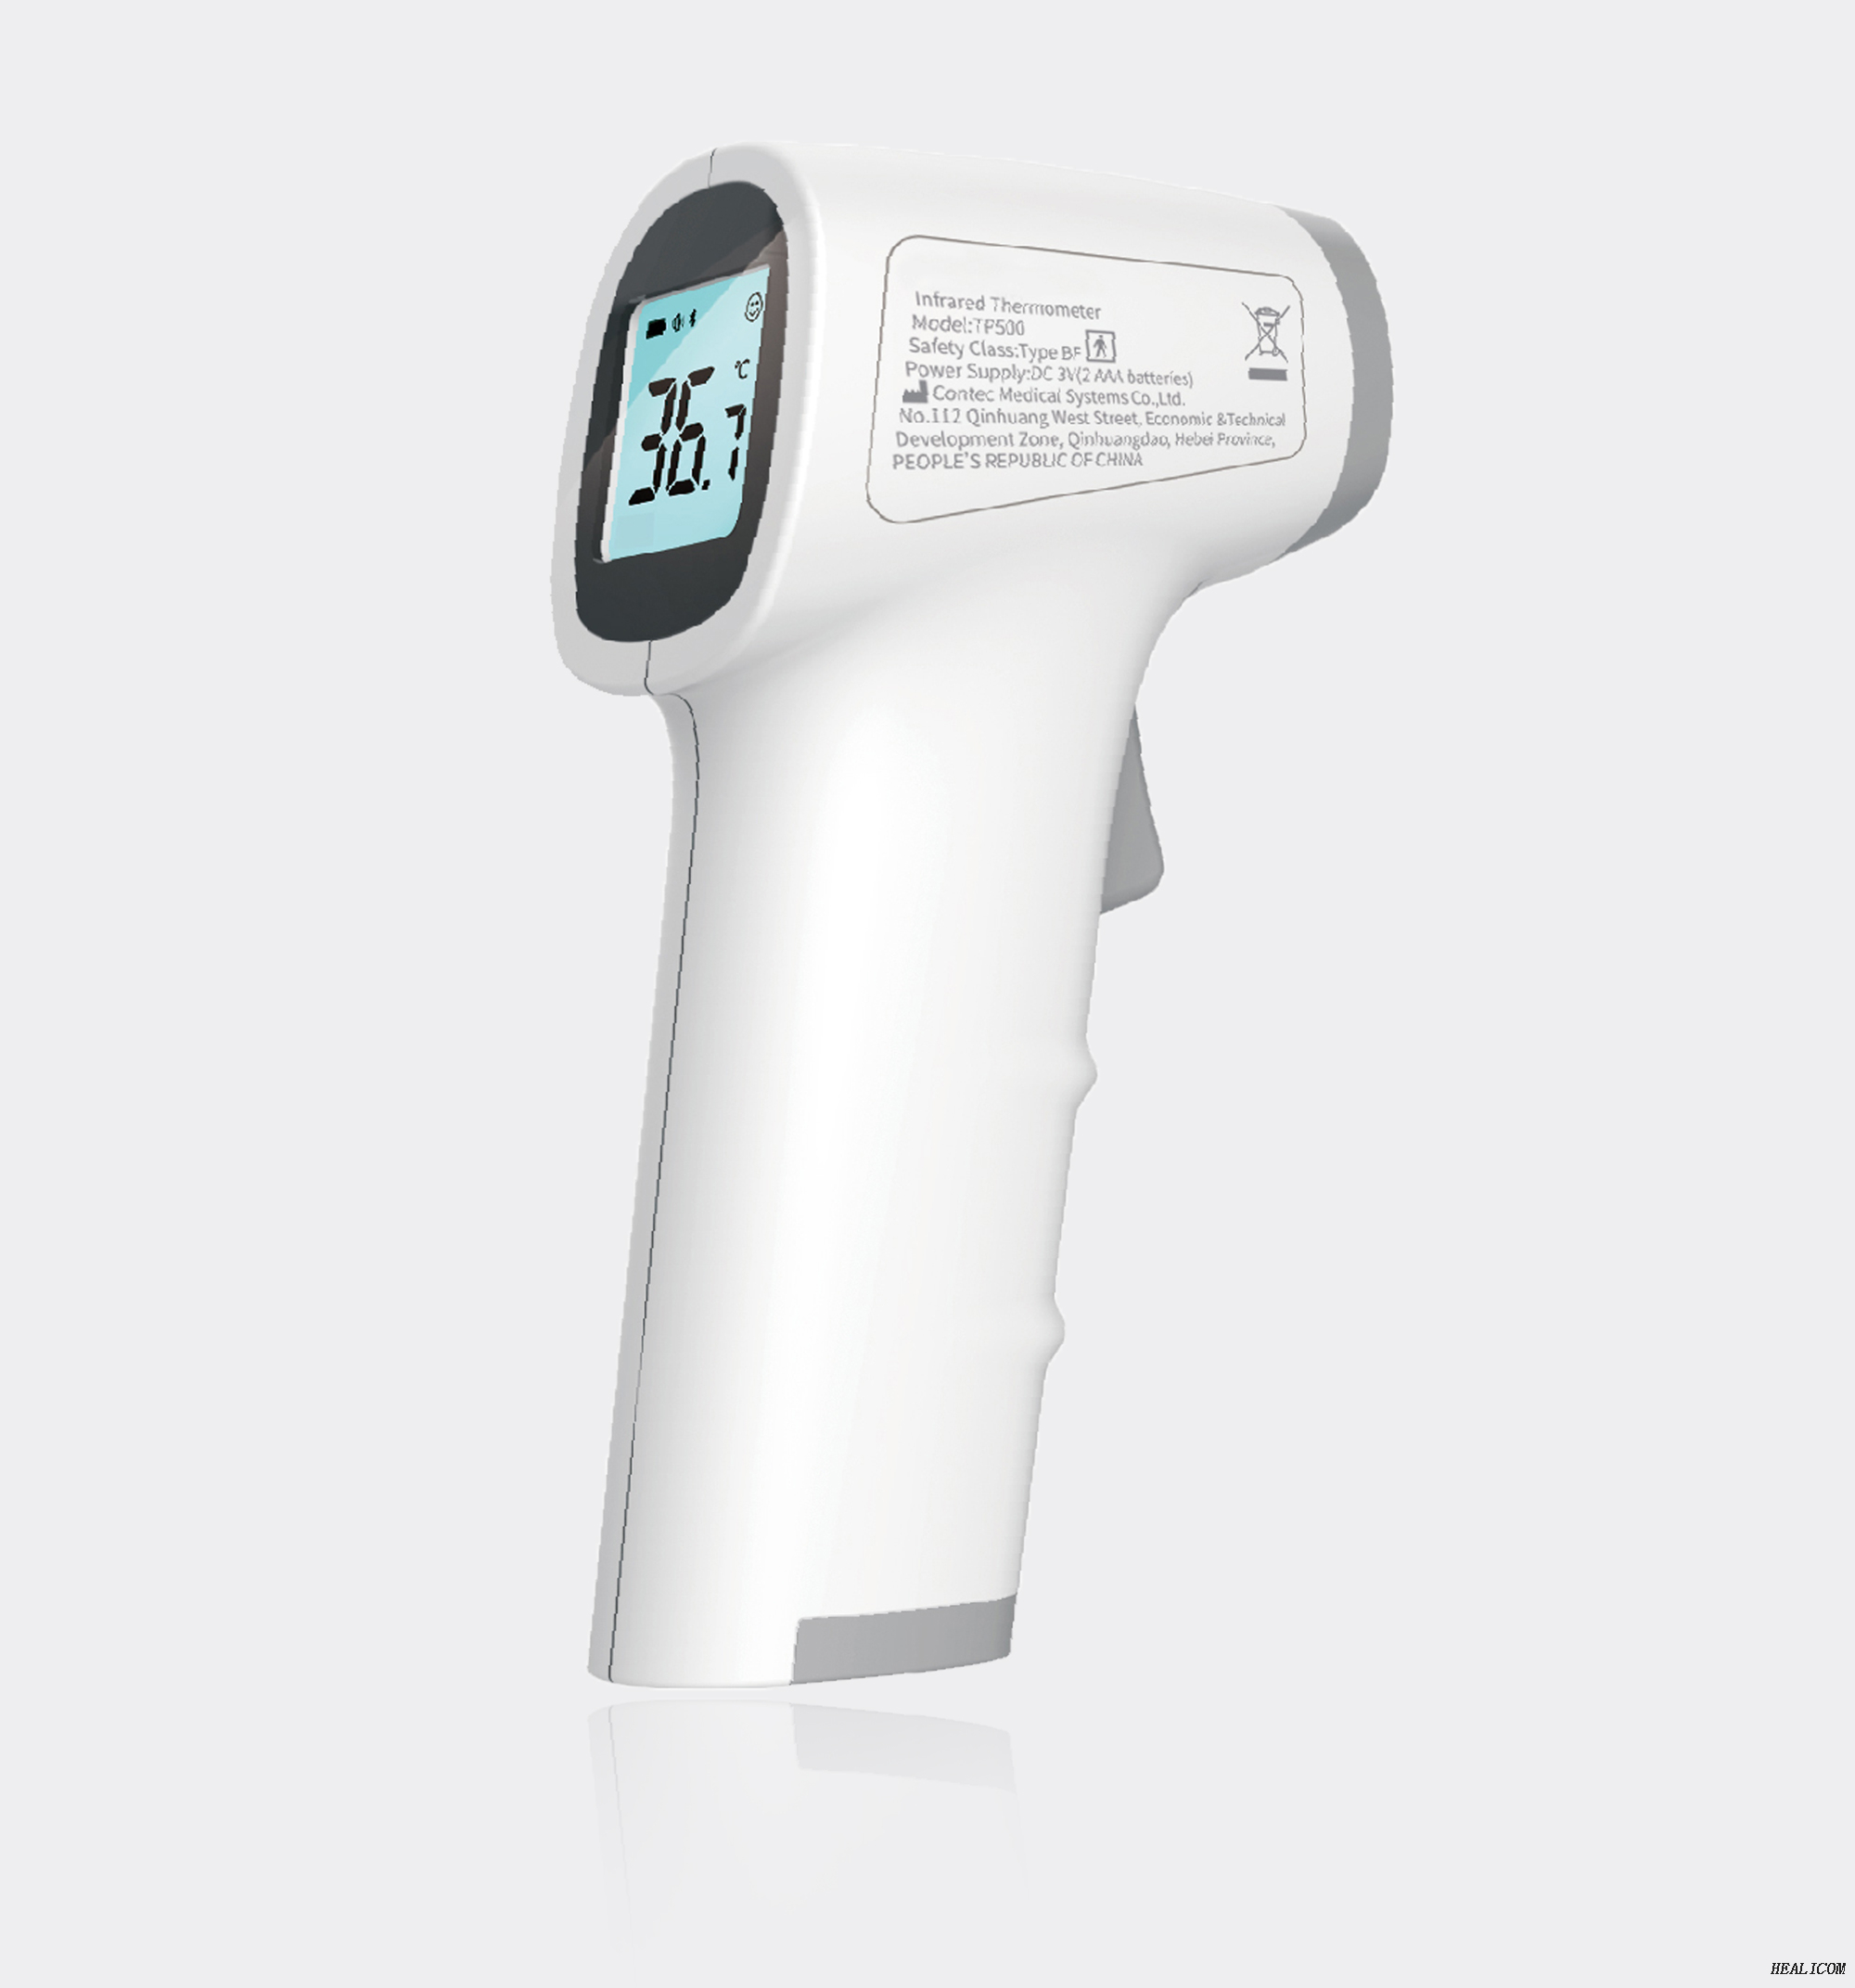 Thermomètre infrarouge numérique sans contact médical de front de pistolet de la température TP500 livrer immédiatement